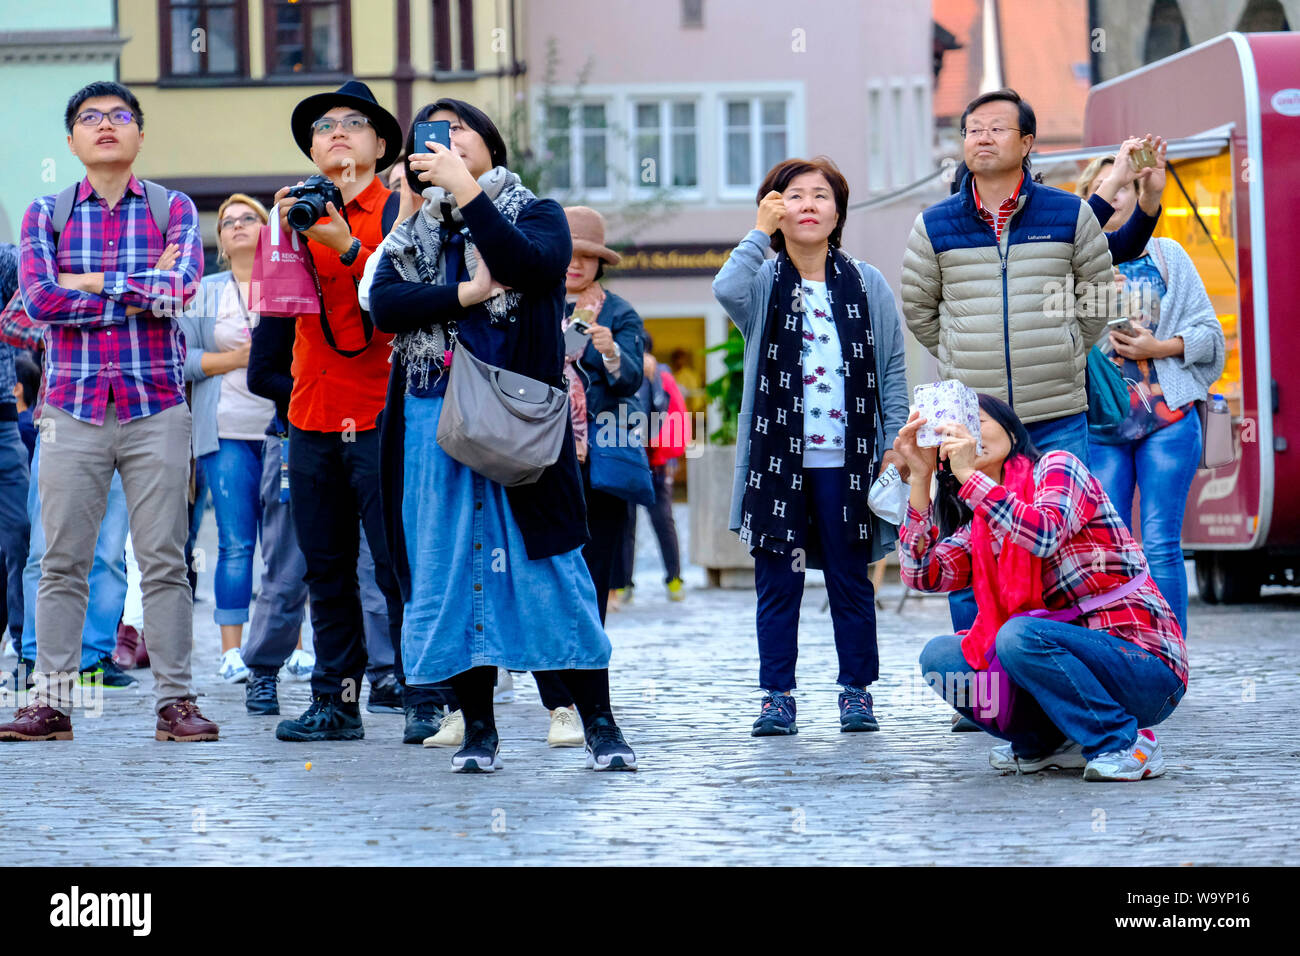 17.10.2018, Rothenburg o.d. Tauber, Mittelfranken, Bayern, Deutschland - Chinesische Reisegruppe auf dem Marktplatz in Rothenburg o.d. Tauber - Chine Stockfoto